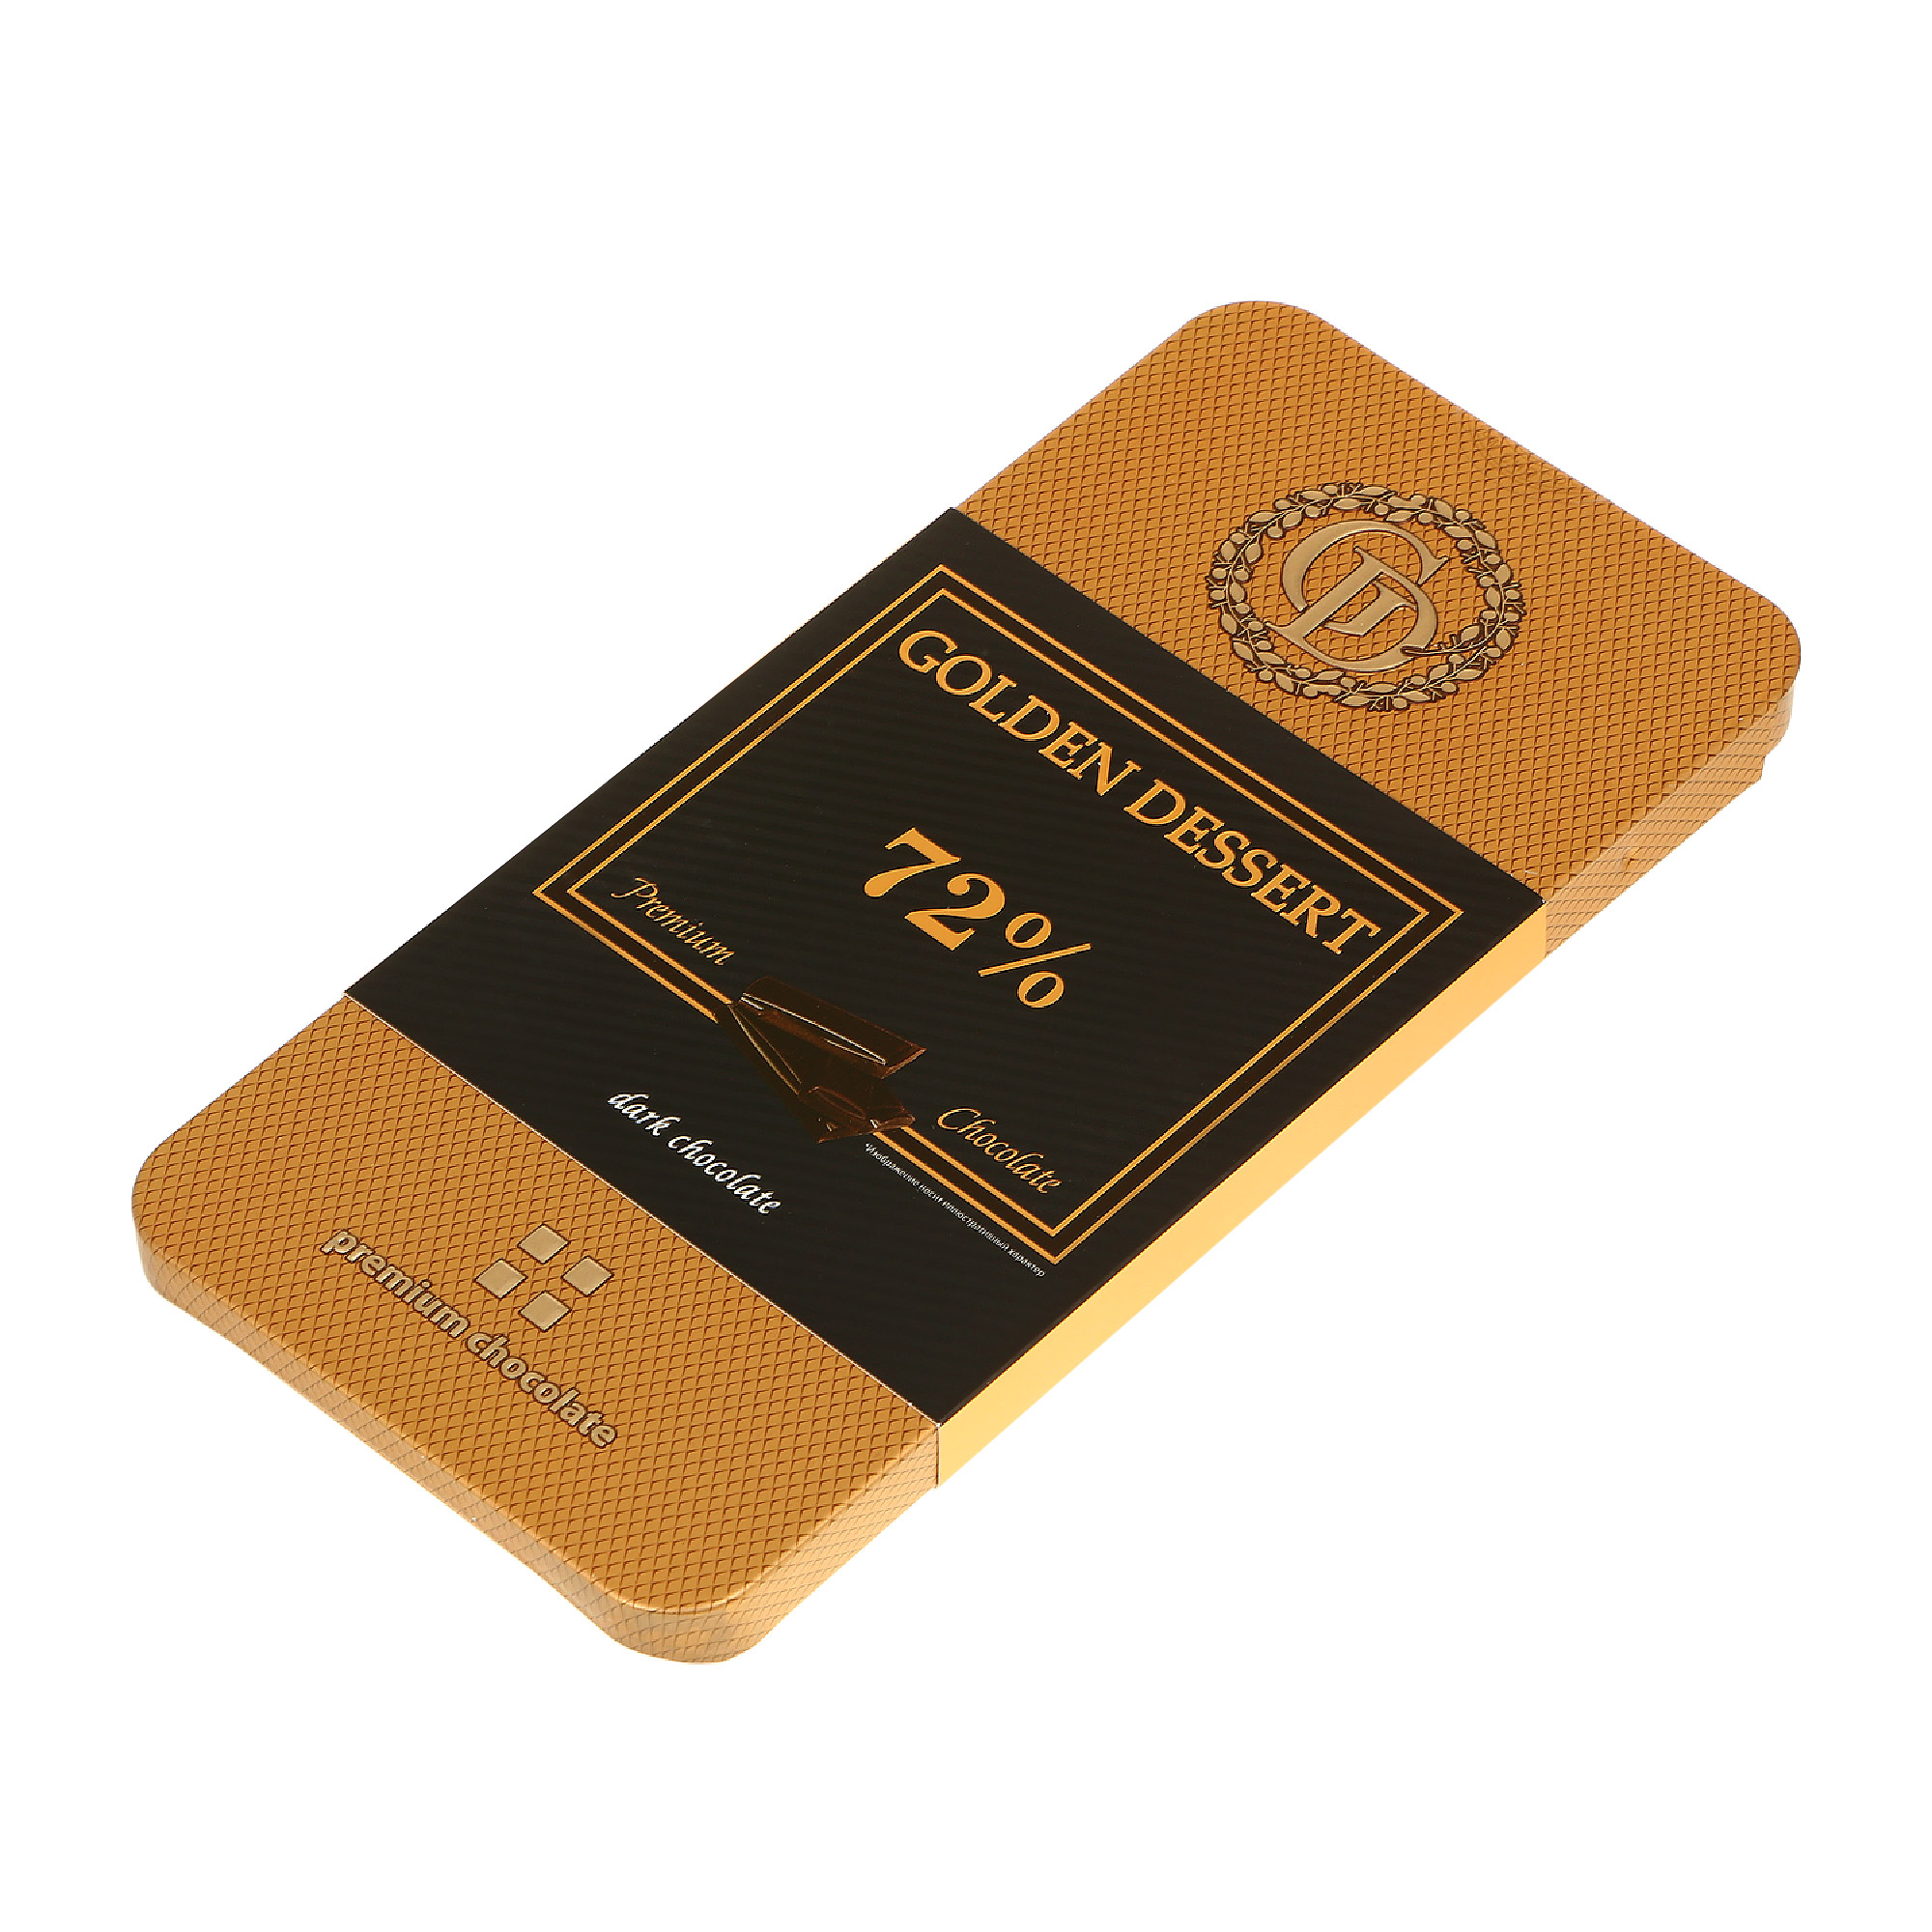 Шоколад горький GOLDEN DESSERT 72% 100 г шоколад merci горький 72% 100 г